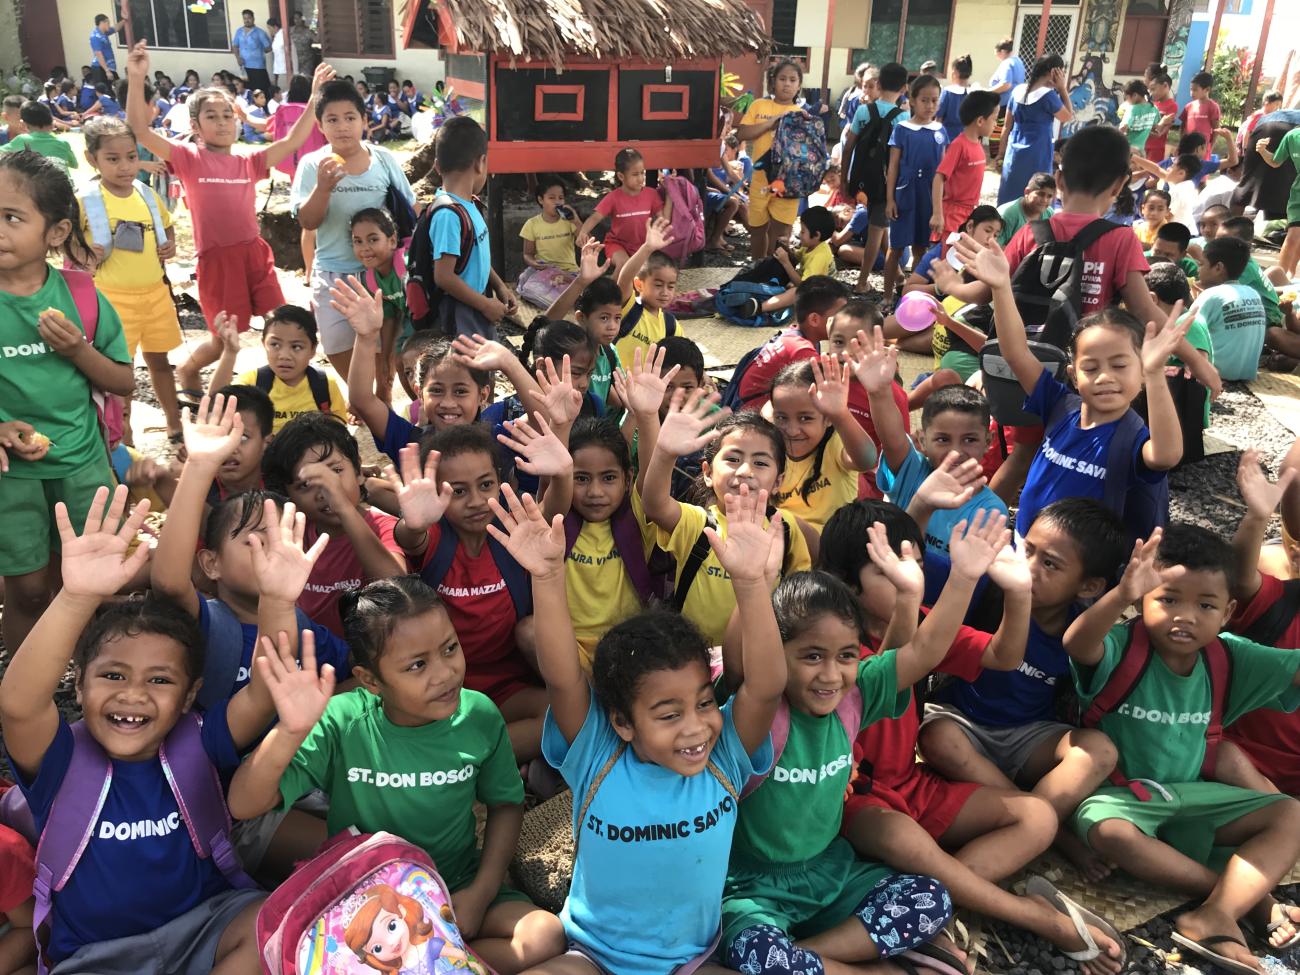 أطفال يرتدون ملابس ملونة يرفعون أيديهم في الهواء.